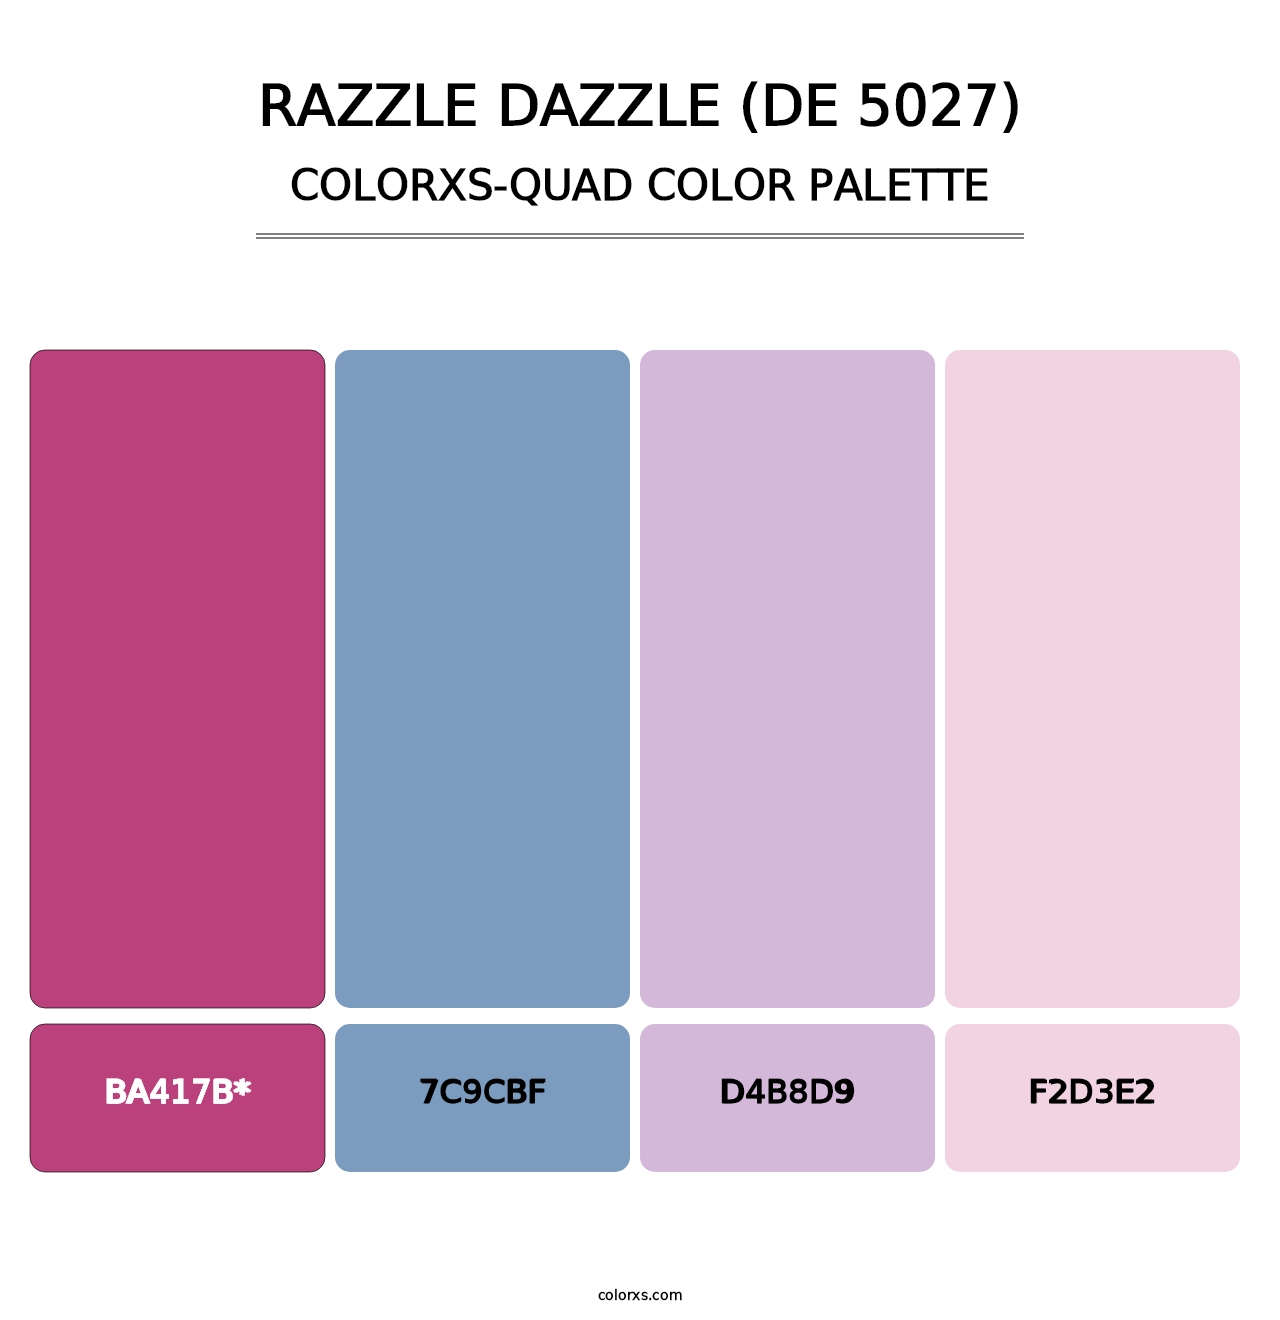 Razzle Dazzle (DE 5027) - Colorxs Quad Palette